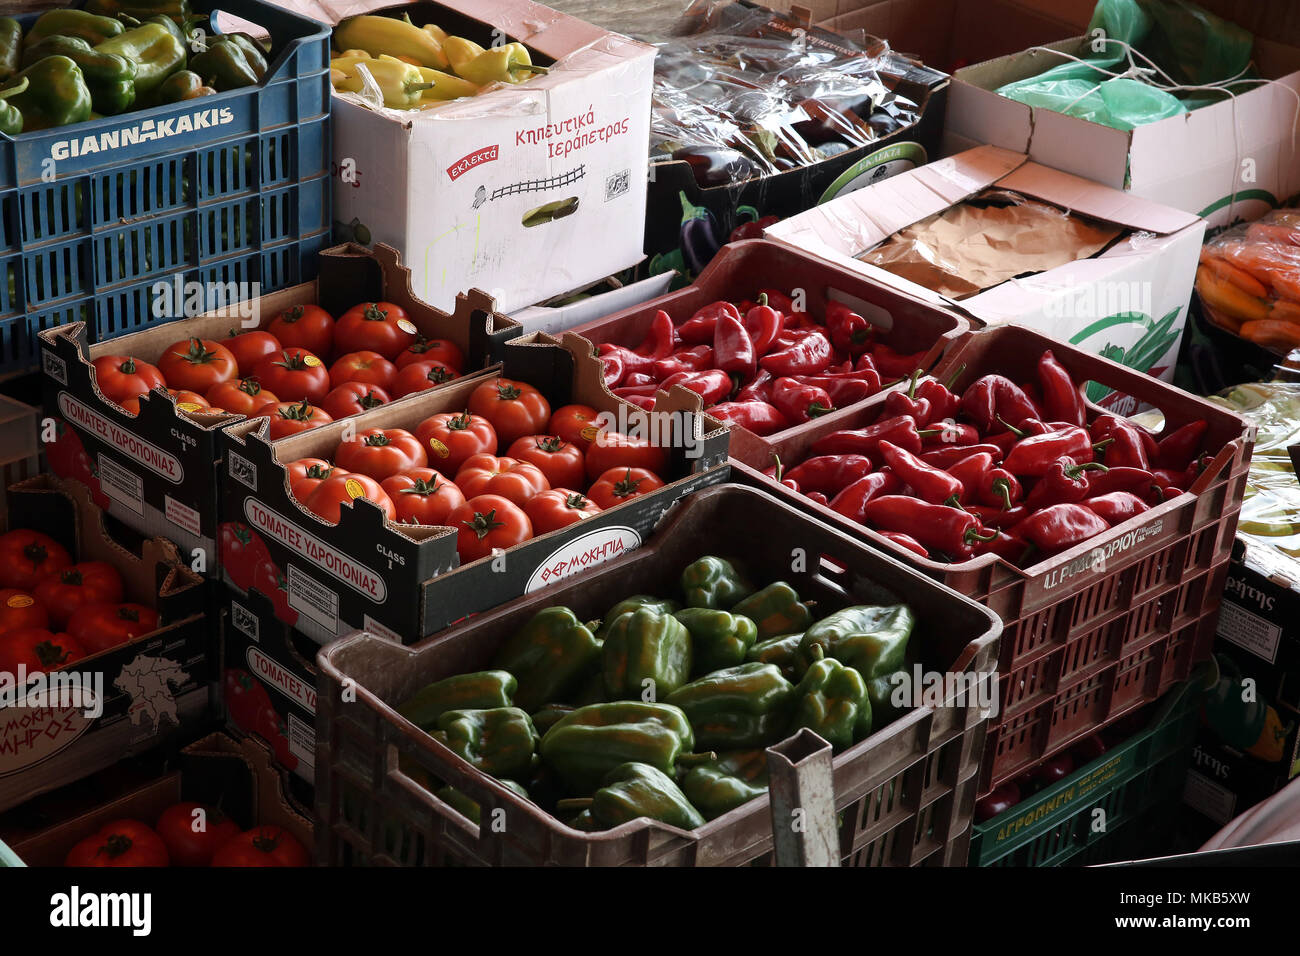 Griechische Gemüse in den Obst- und Gemüsemarkt in Athen, Griechenland. ©  Elias Verdi/Alamy Stockfotos Stockfotografie - Alamy